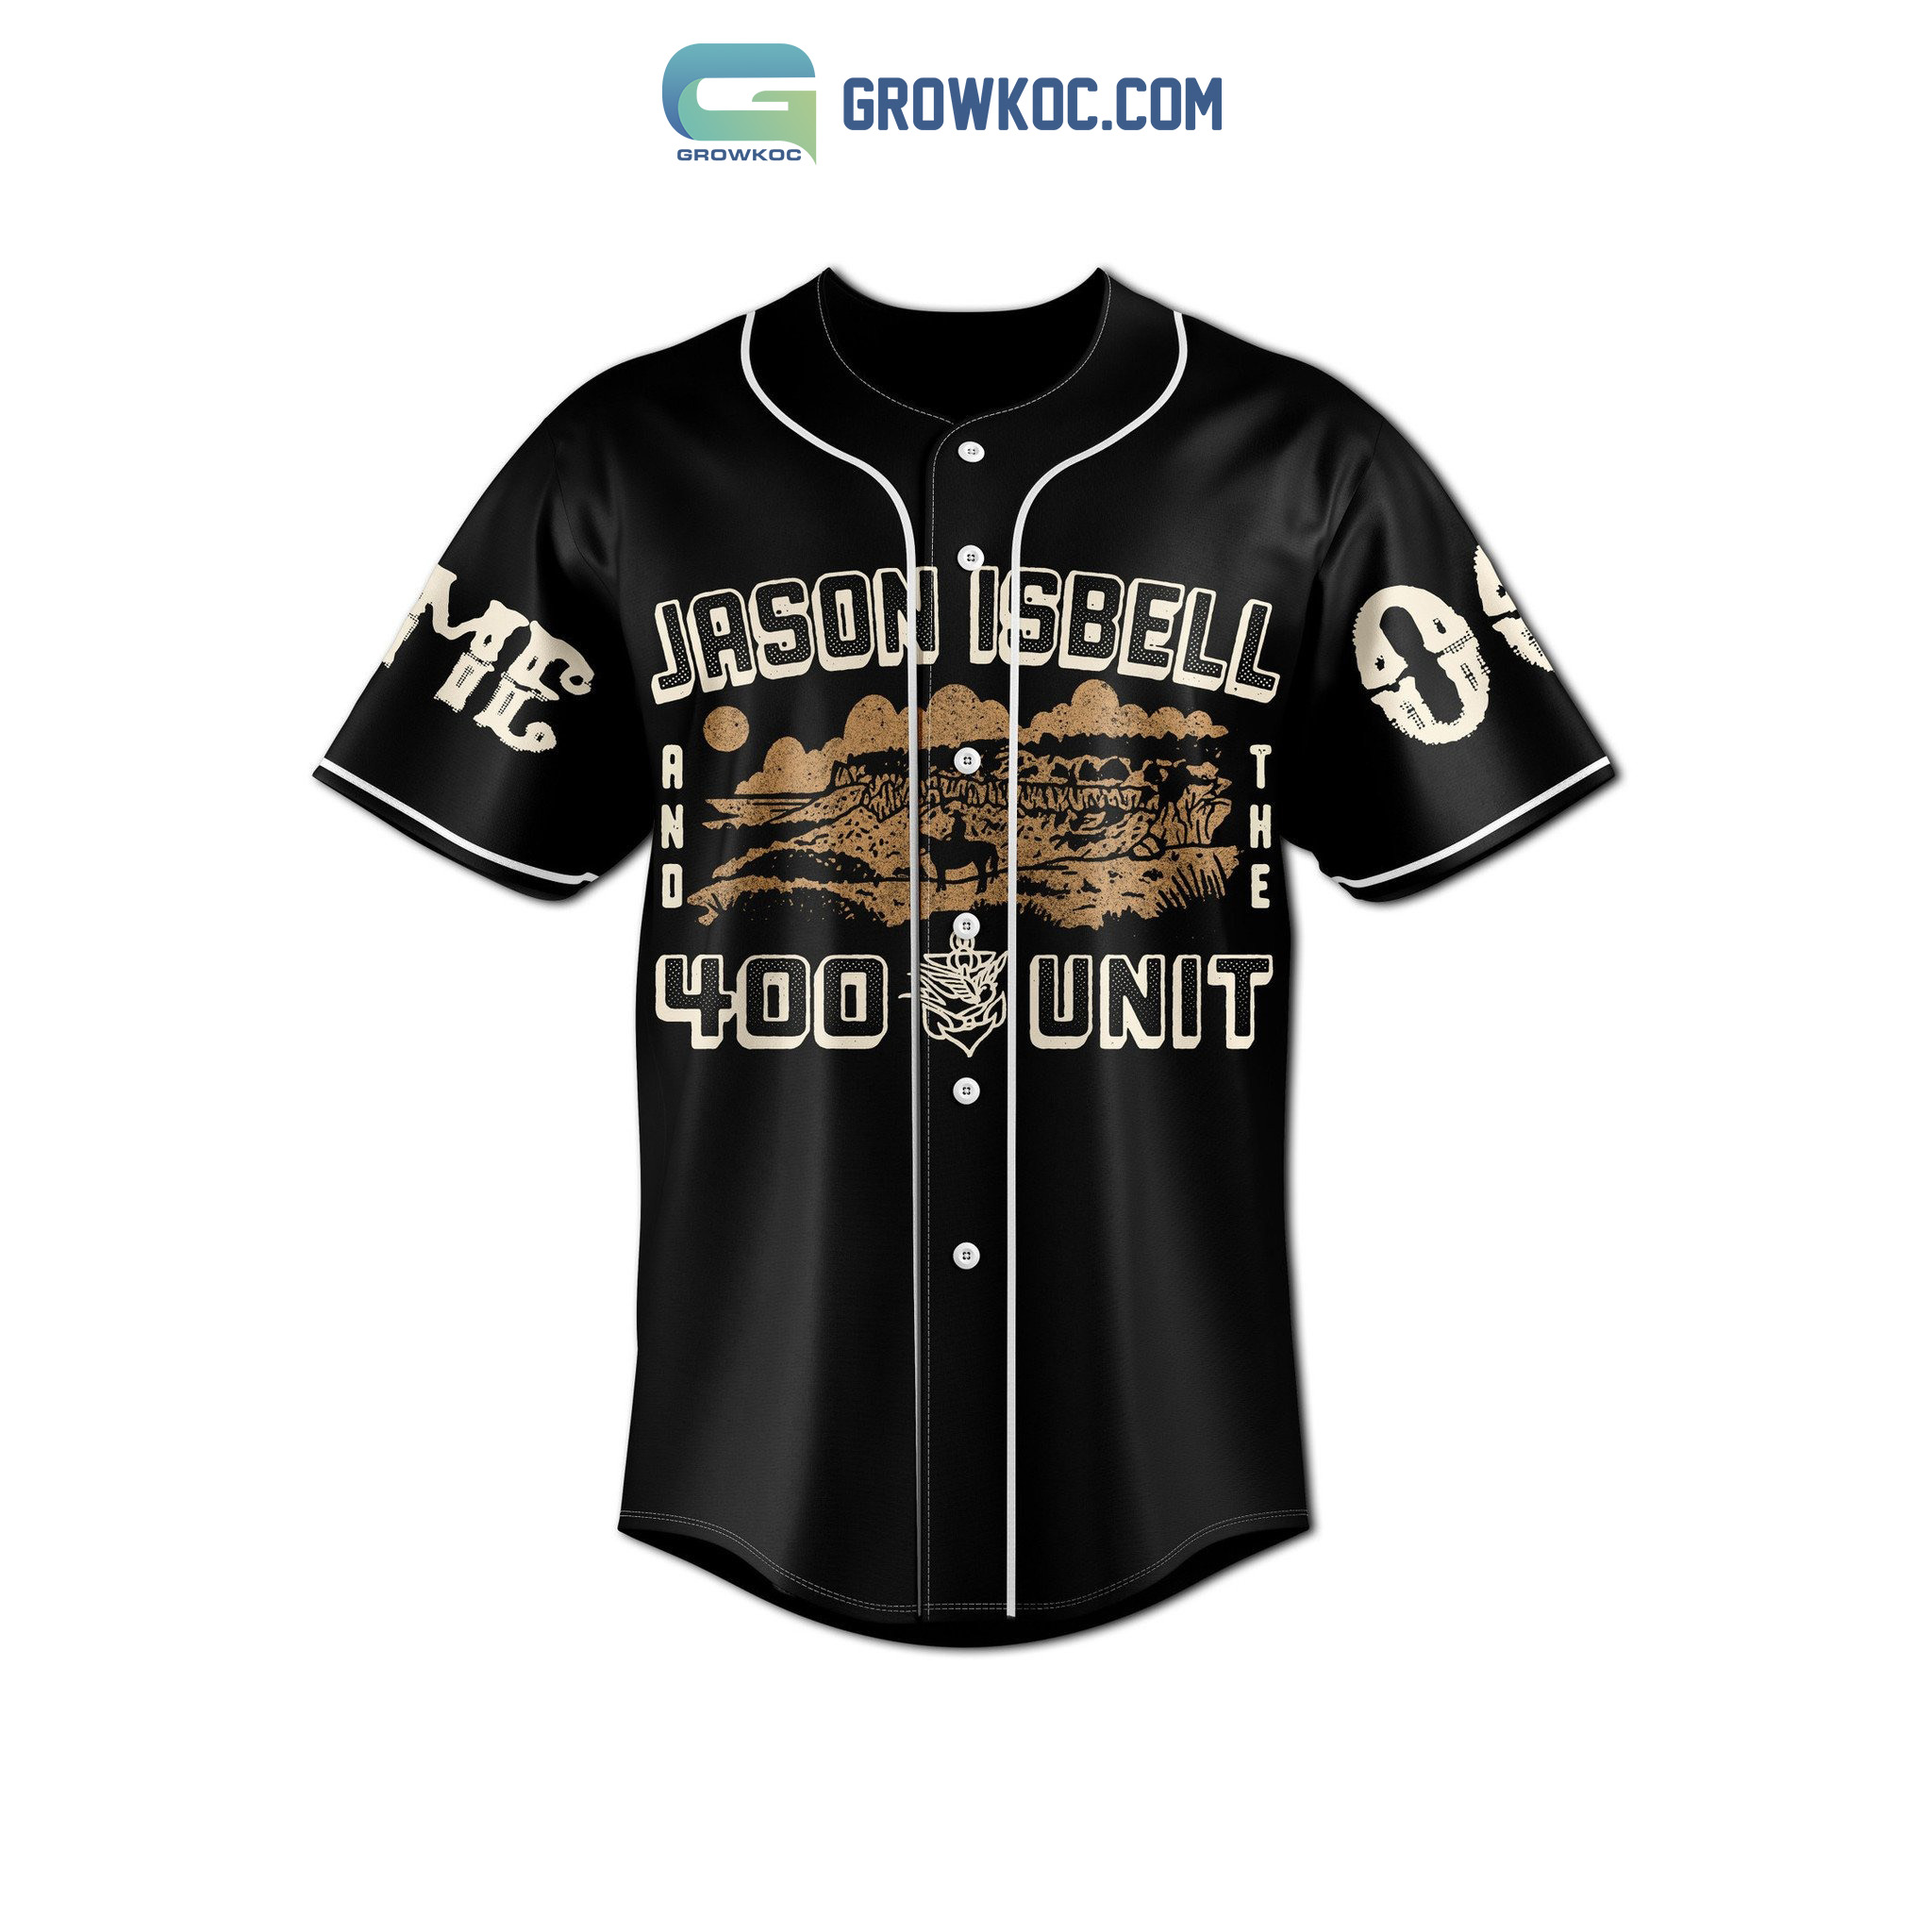 Jason Isbell The 400 Unit Personalized Baseball Jersey